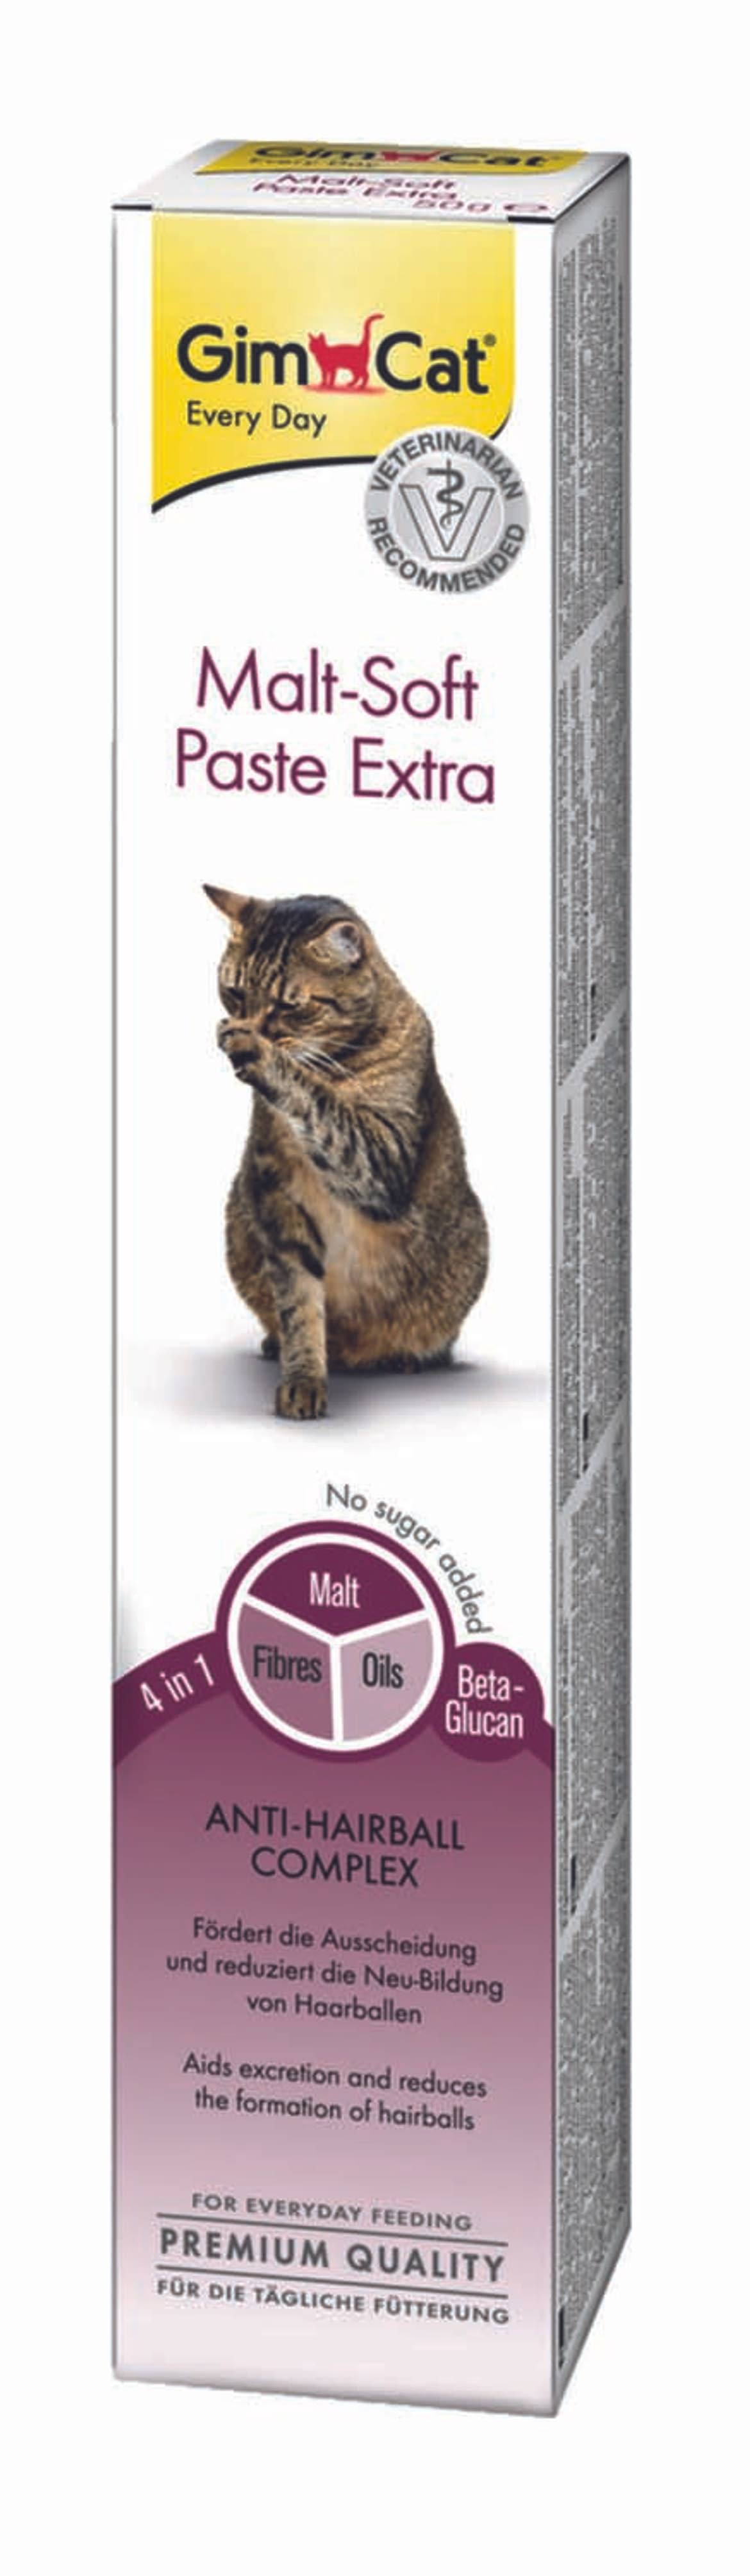 GimCat macska paszta malt-soft extra